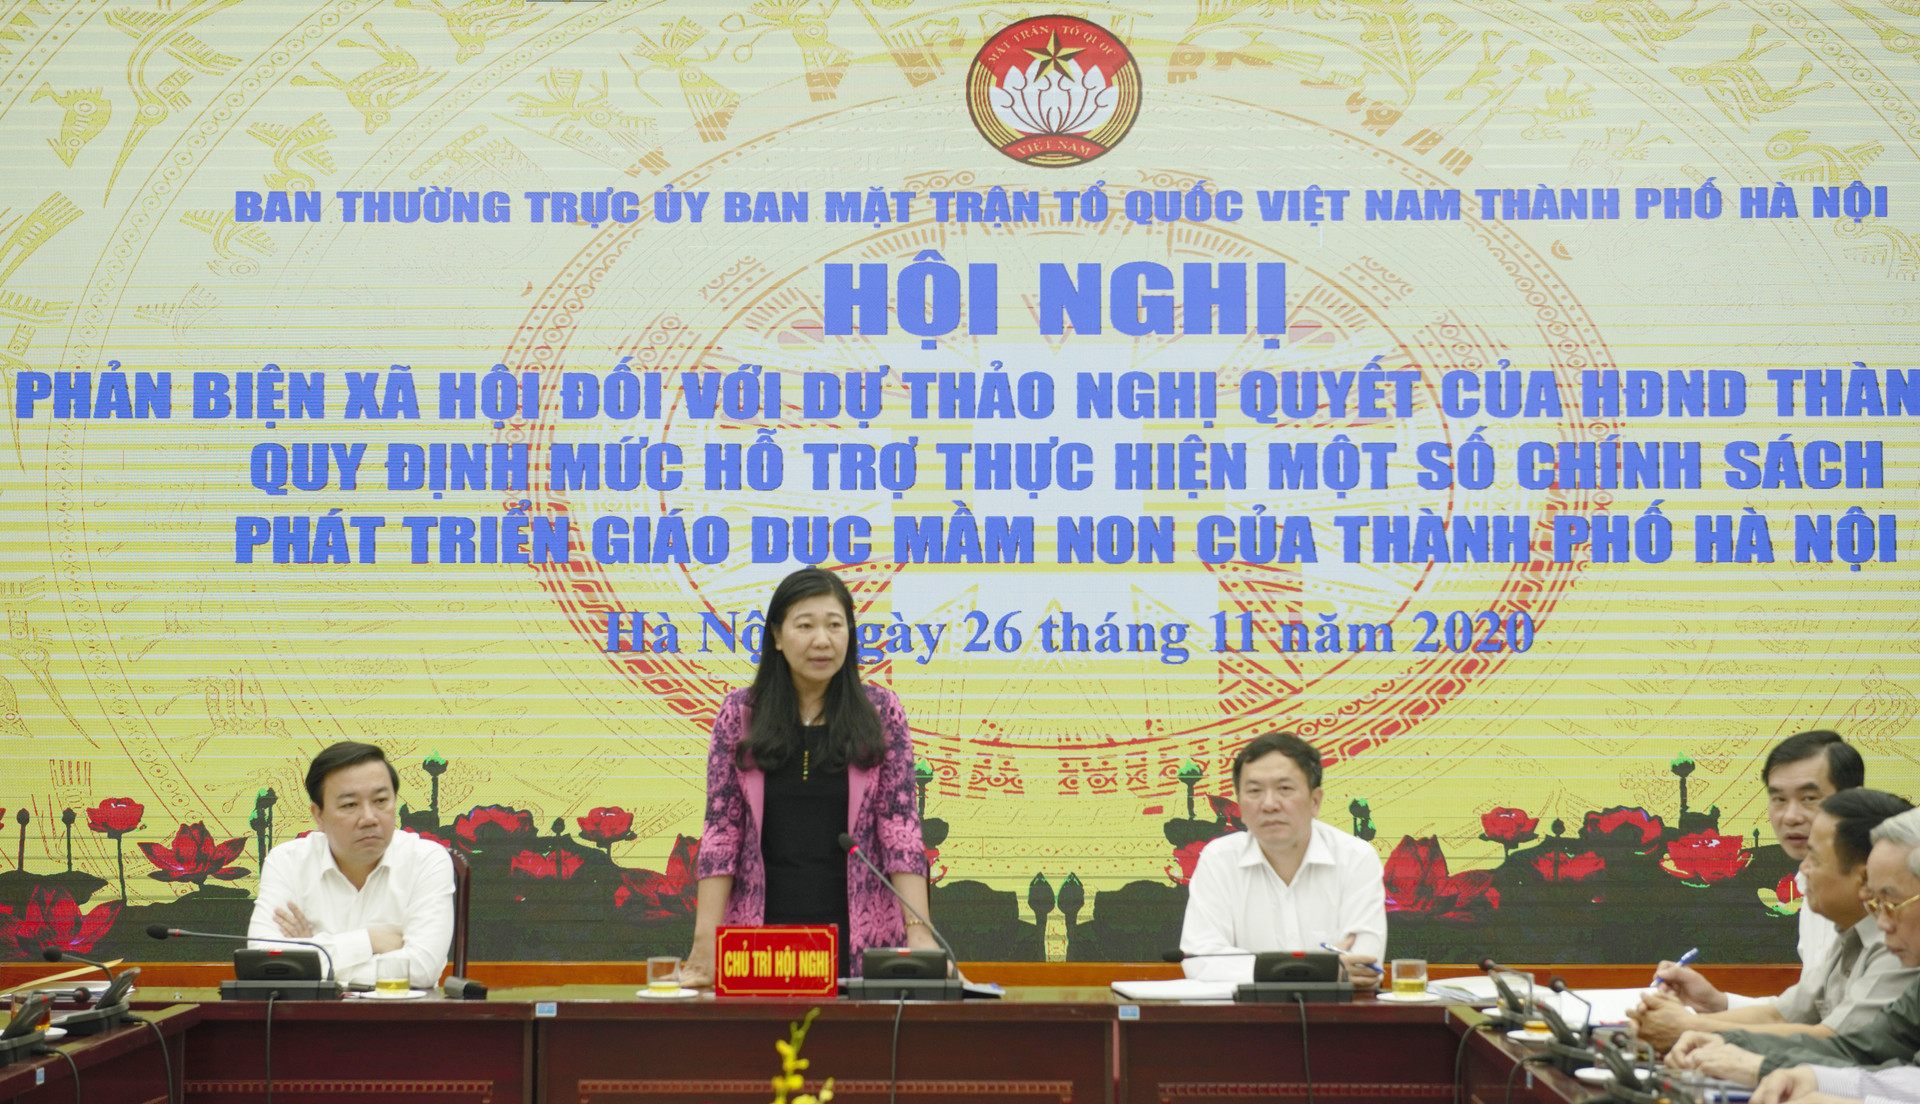 Bà Nguyễn Lan Hương, Chủ tịch UBMTTQ Thành phố Hà Nội phát biểu.